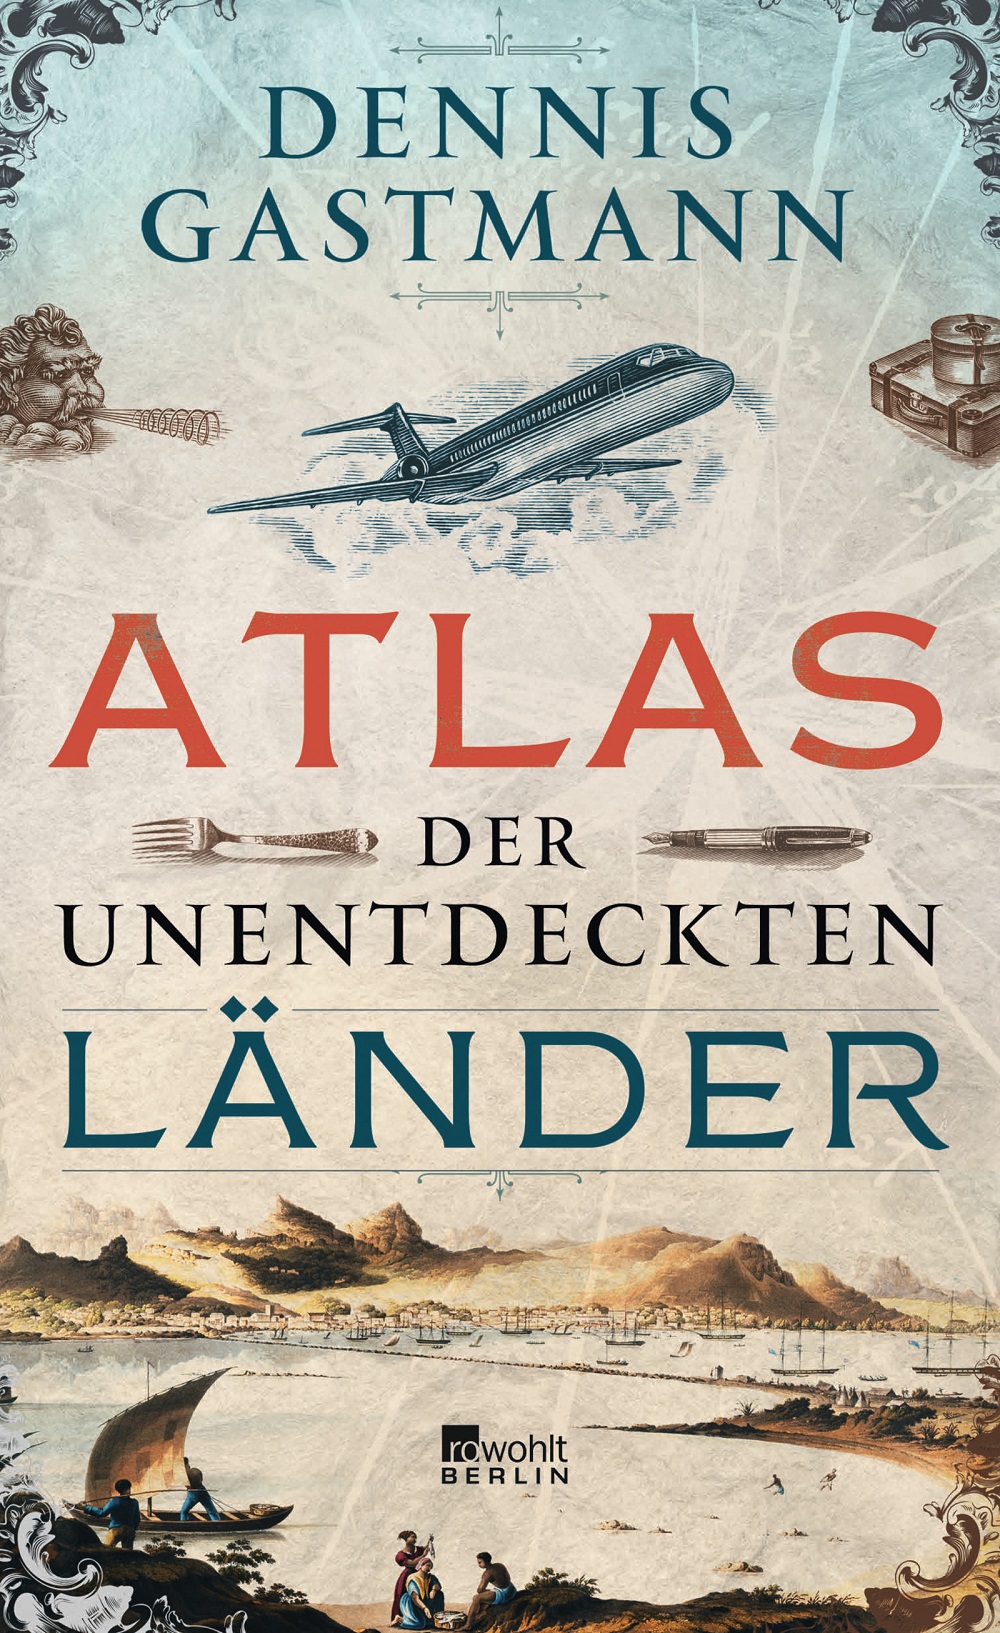 Cover Atlas der unentdeckten Länder